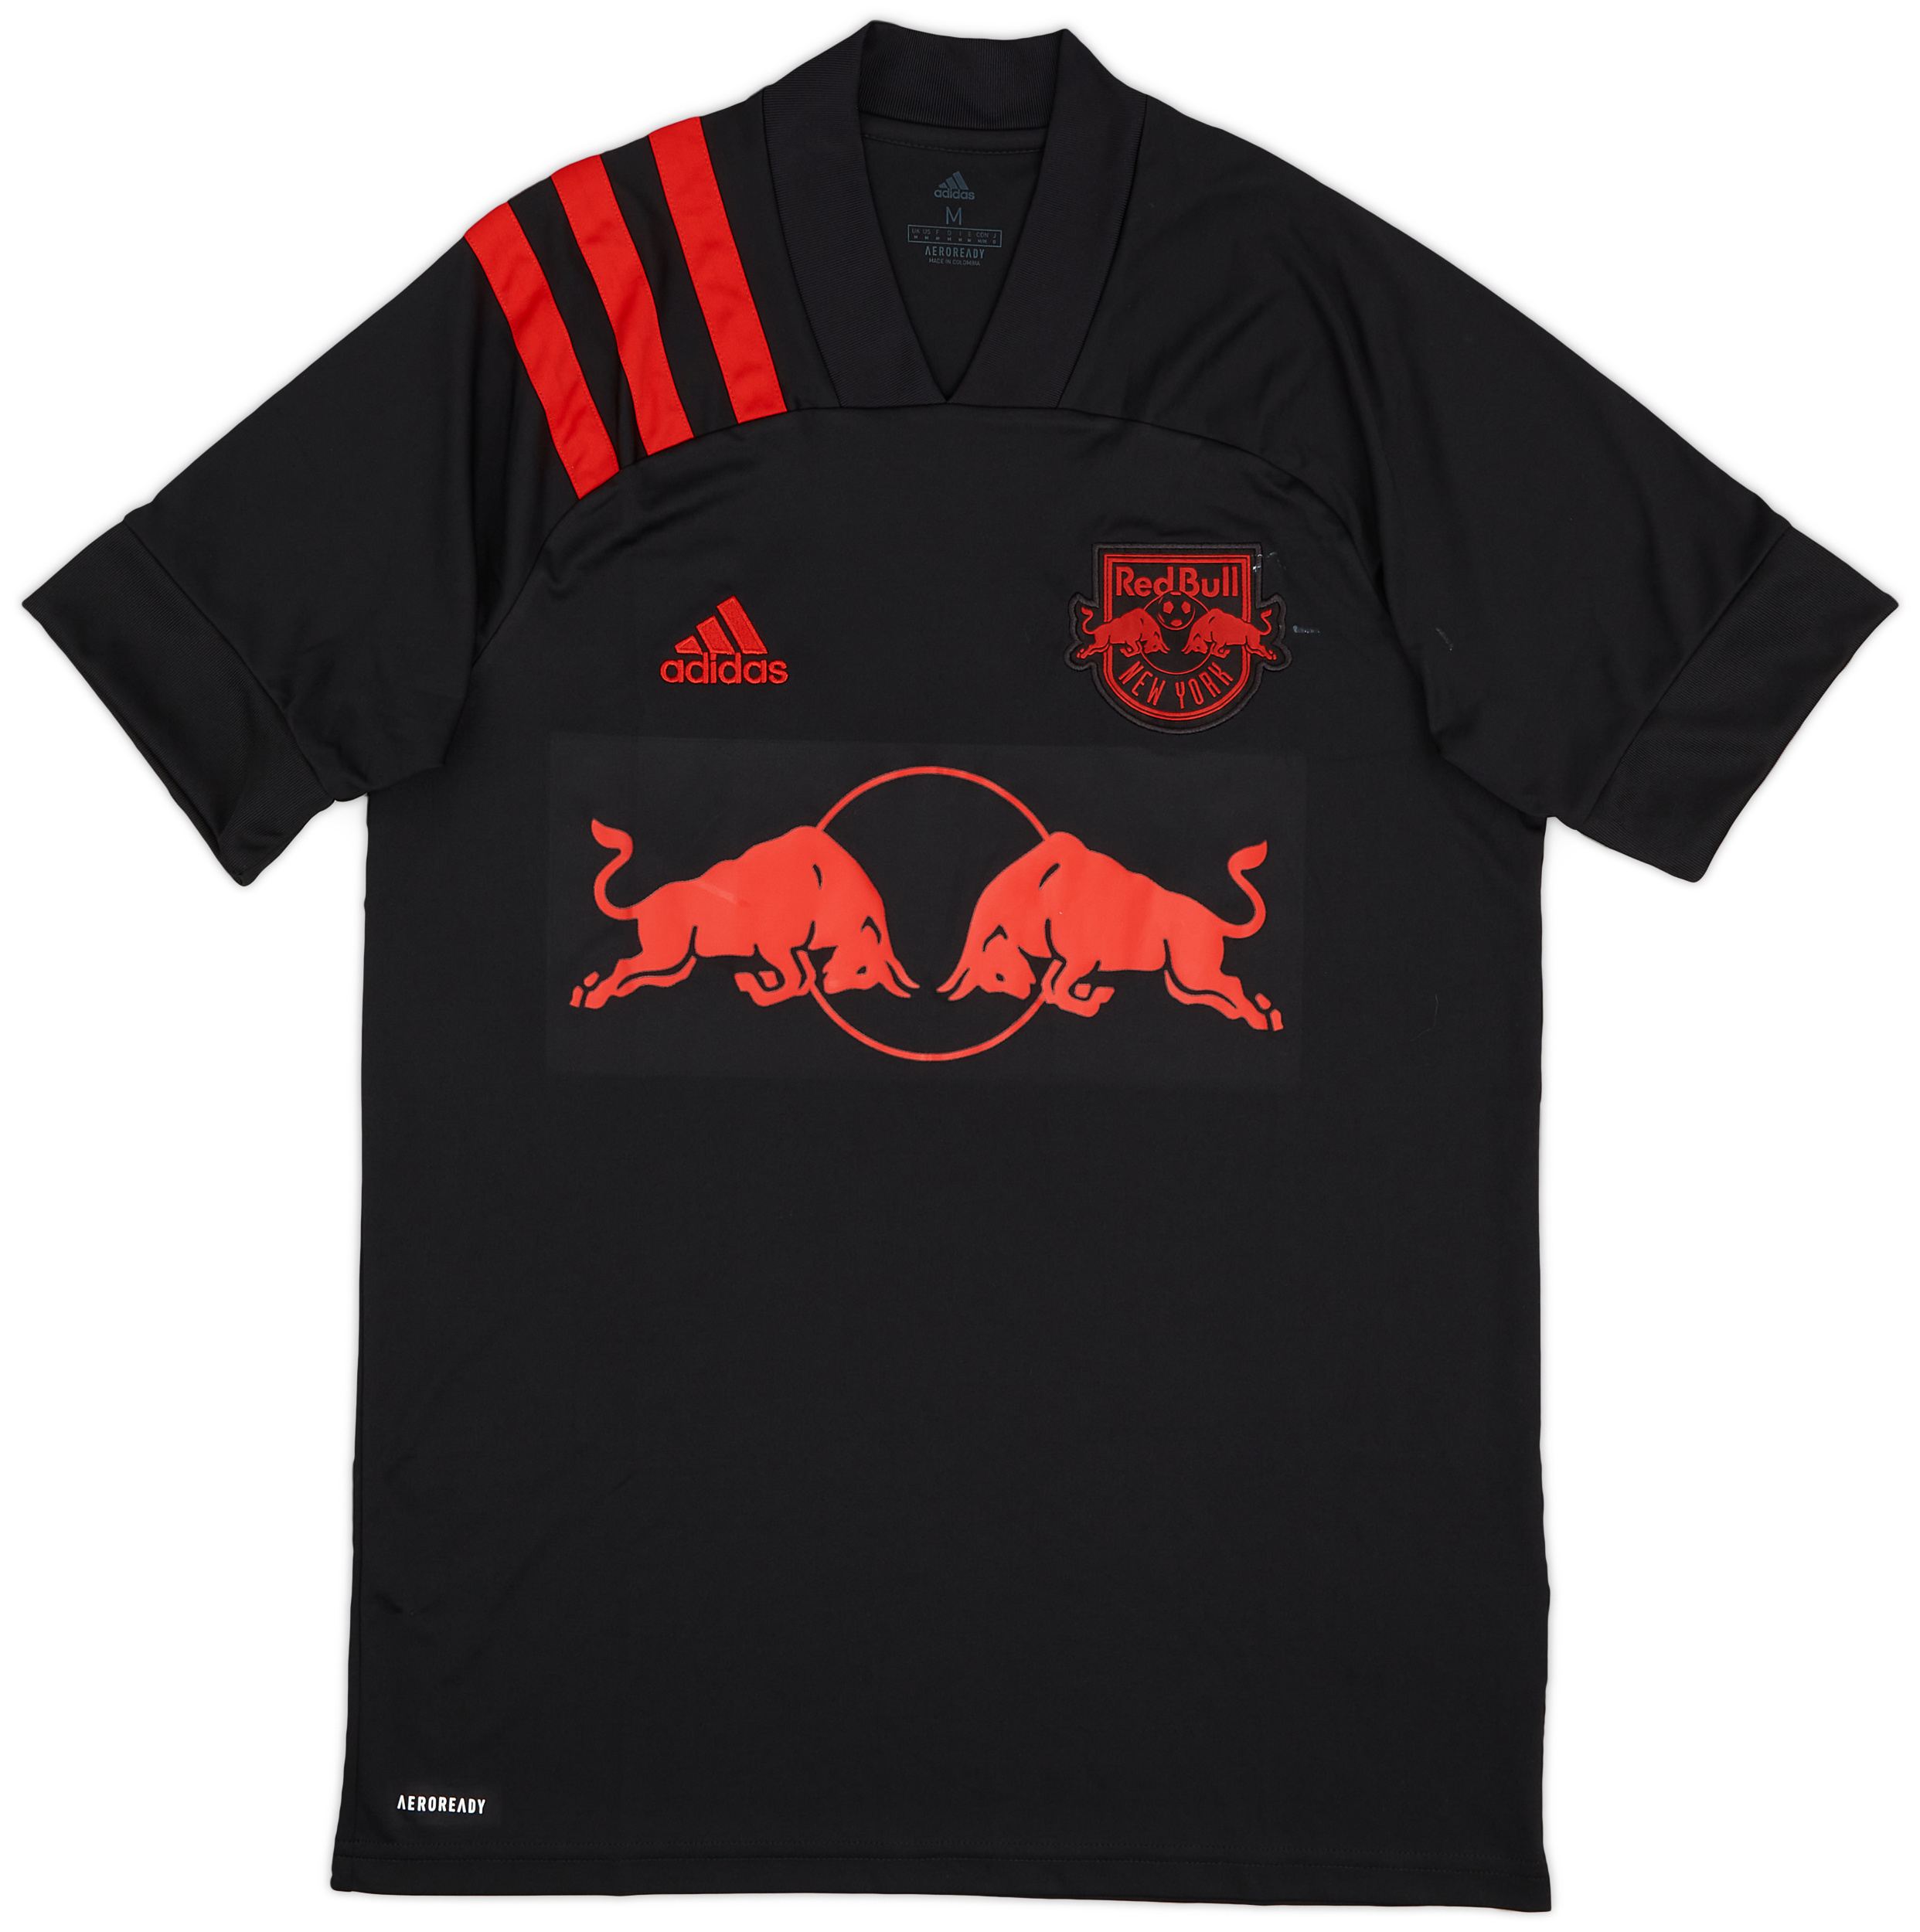 Retro New York Red Bulls Shirt